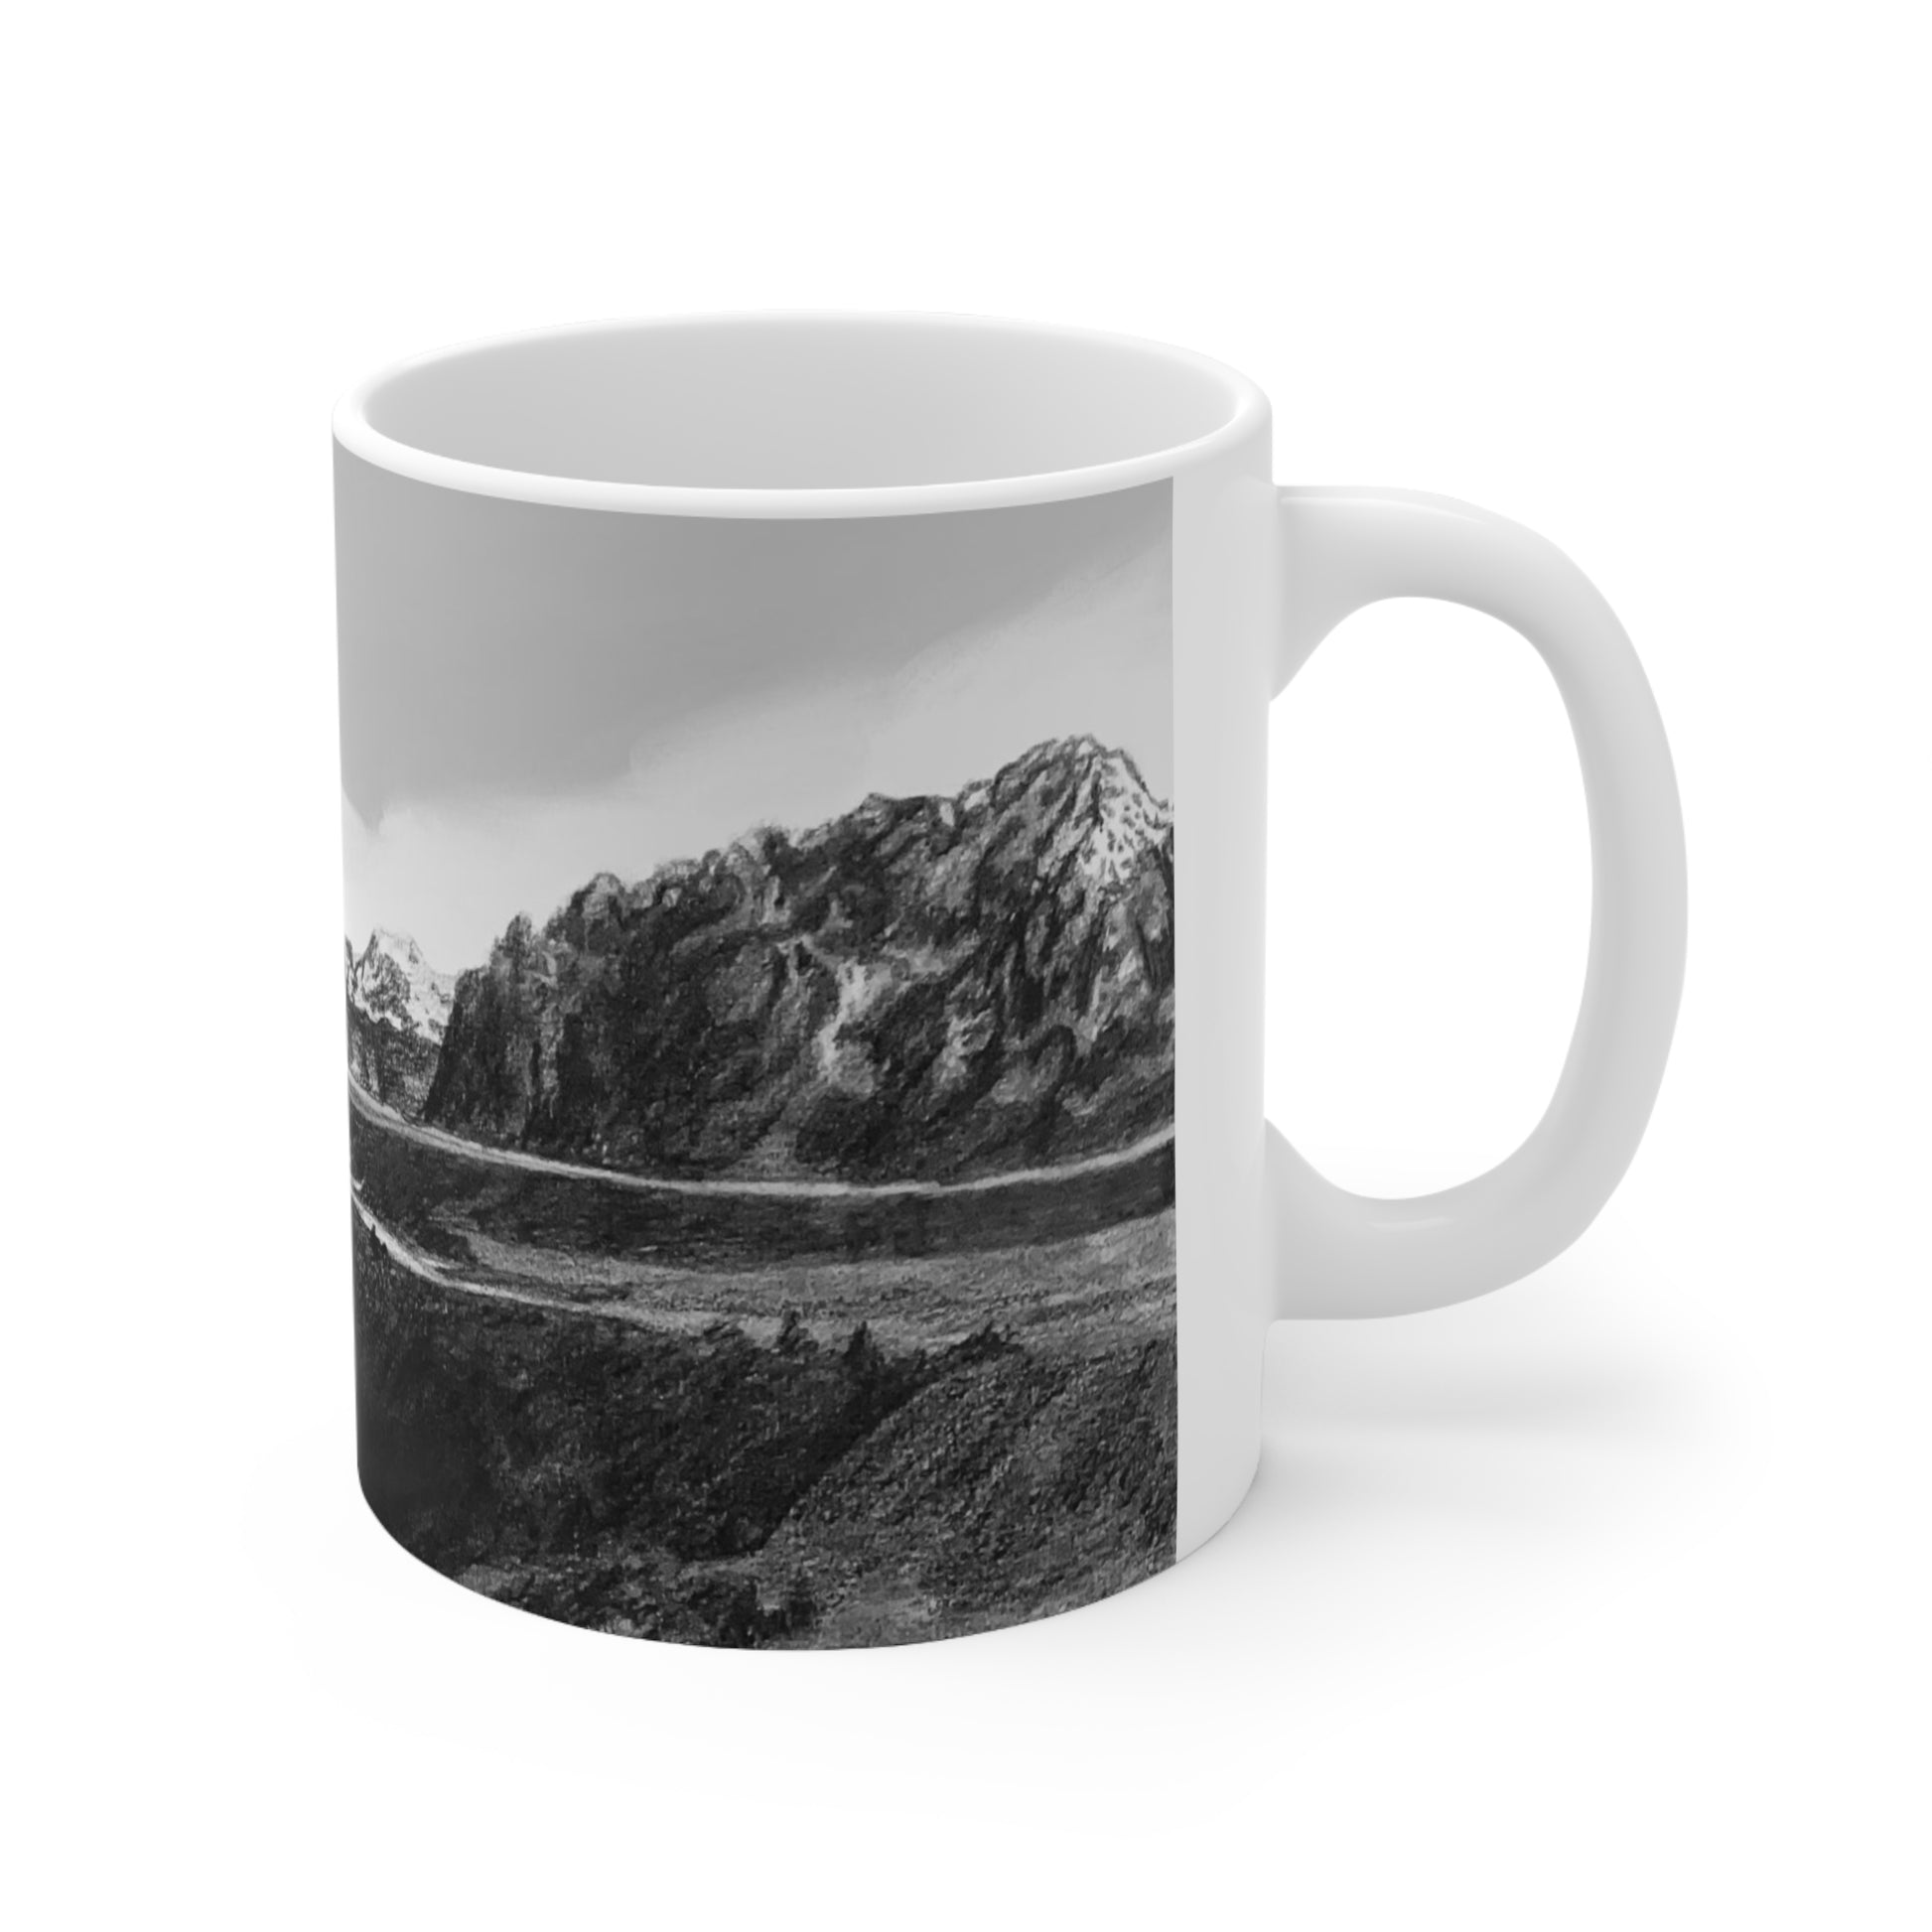 Wyoming Mug